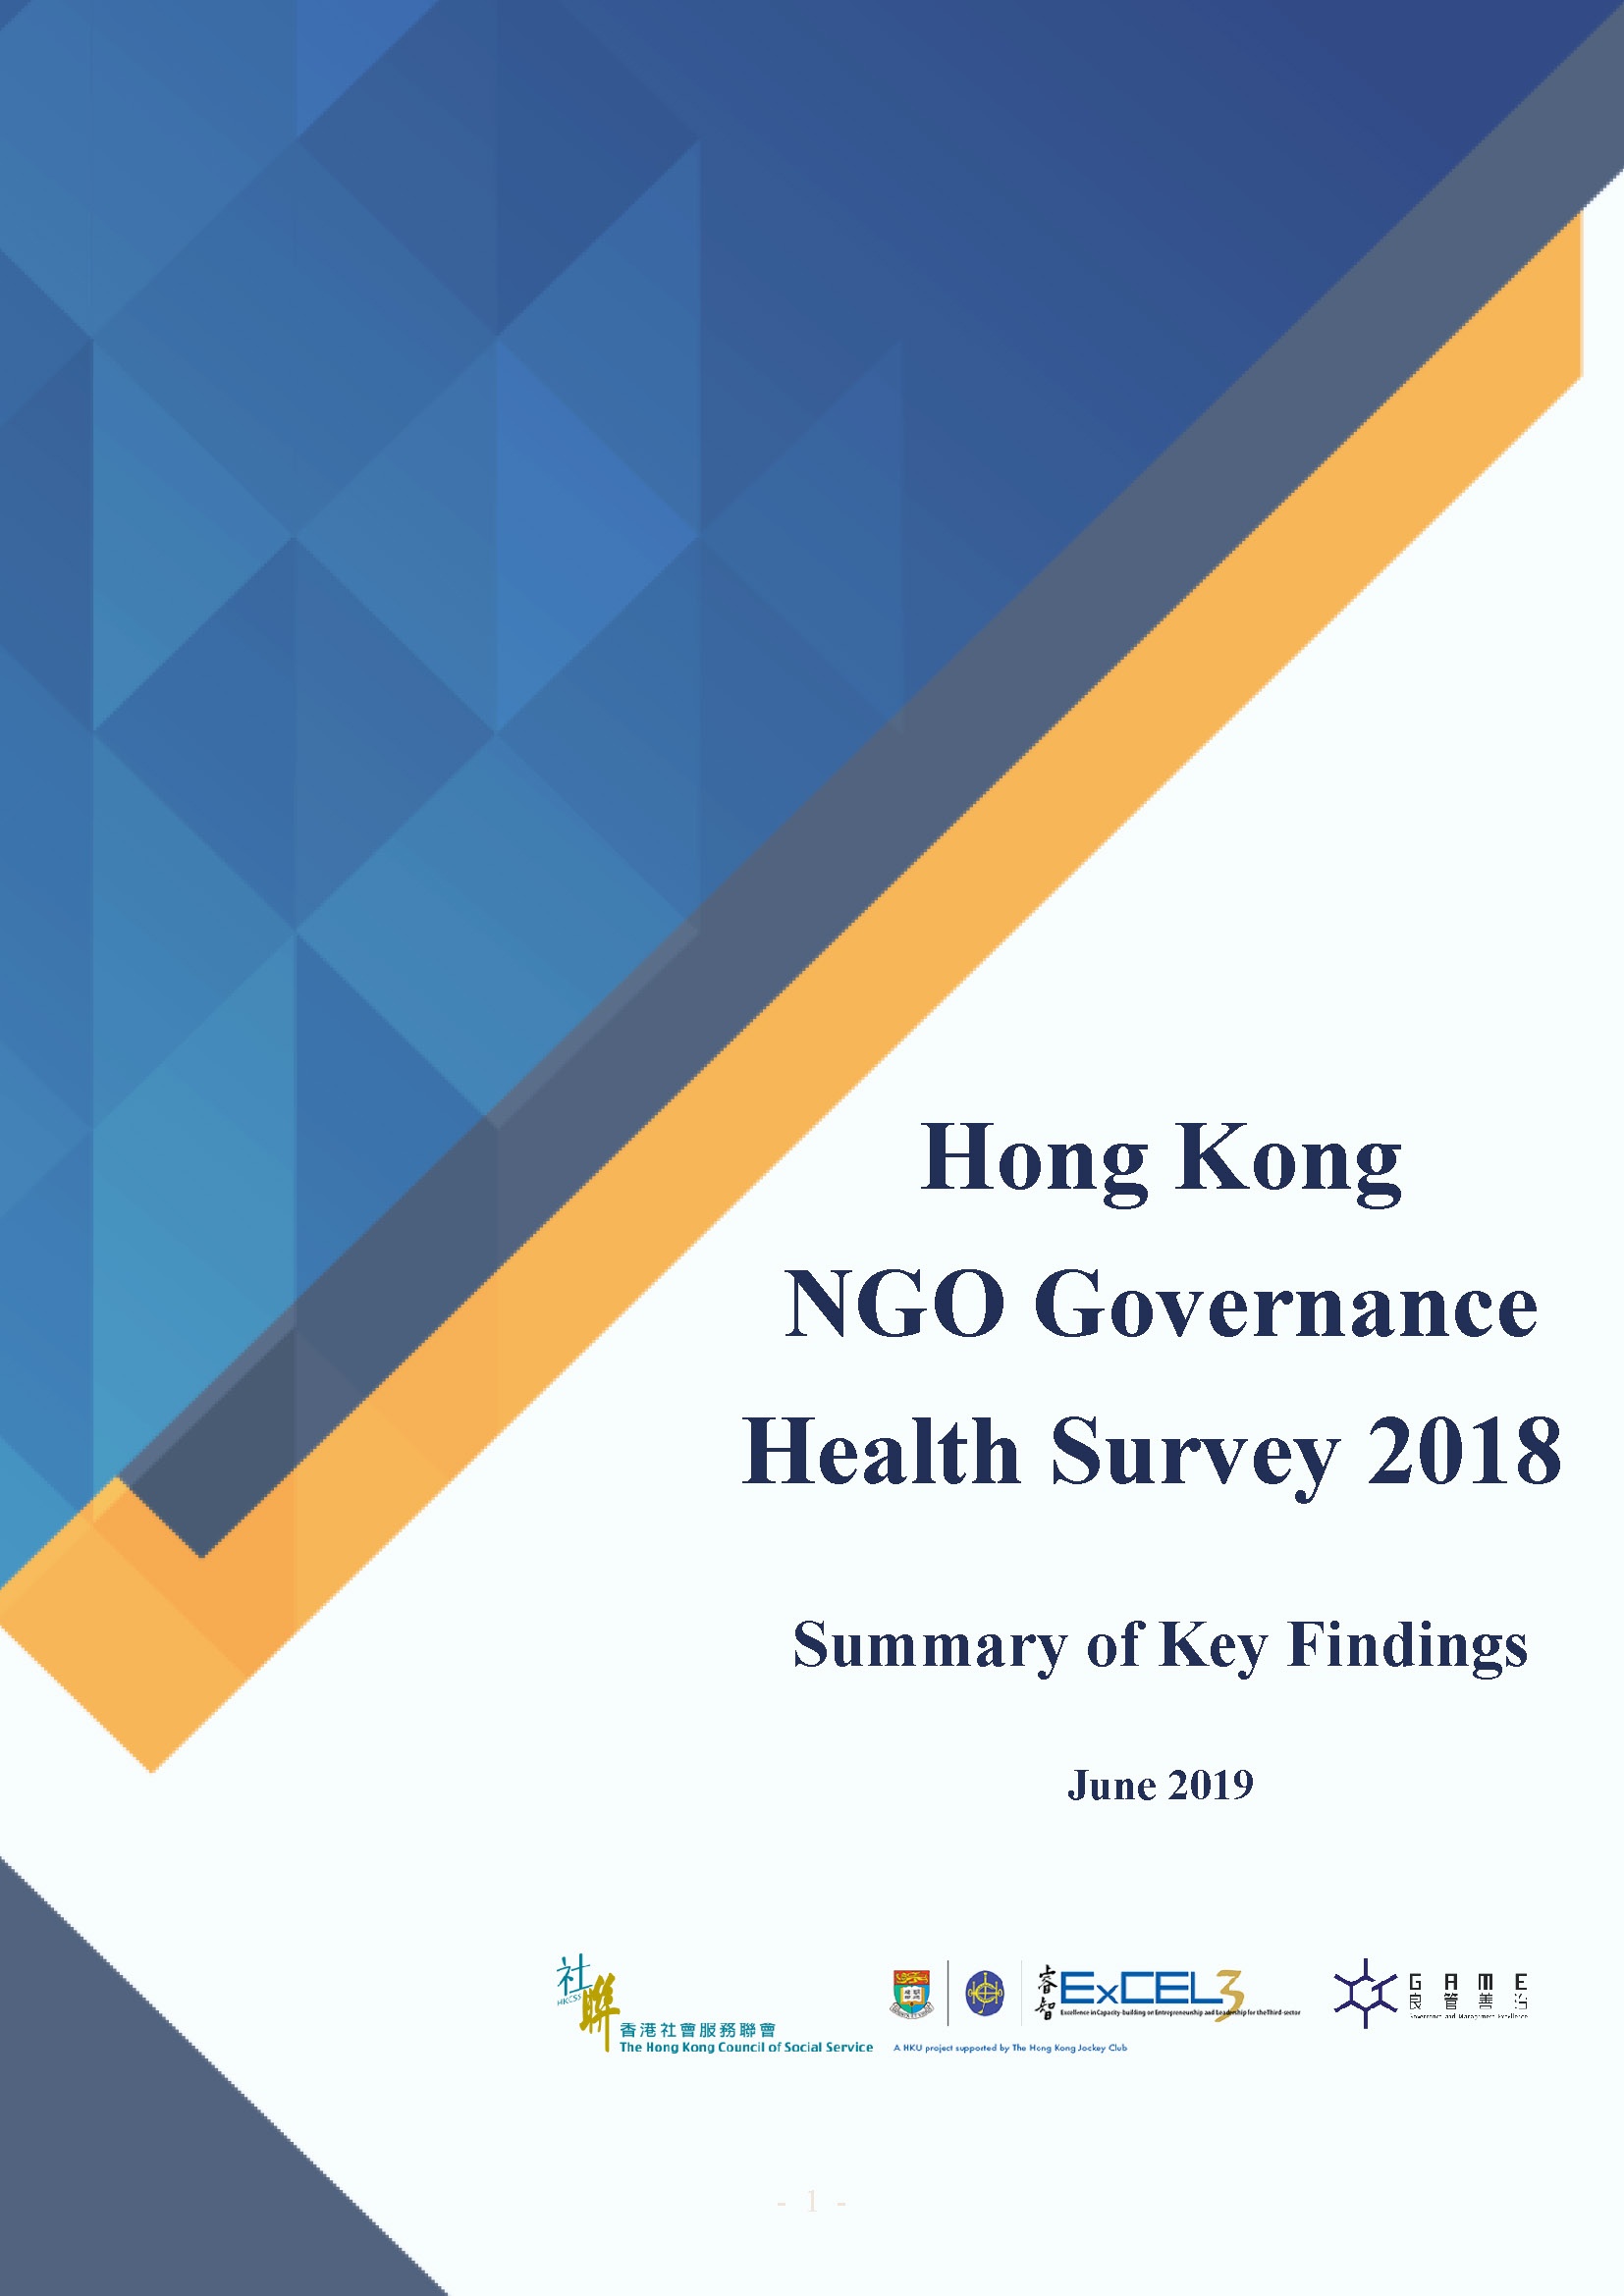 Hong Kong NGO Governance Health Survey 2018